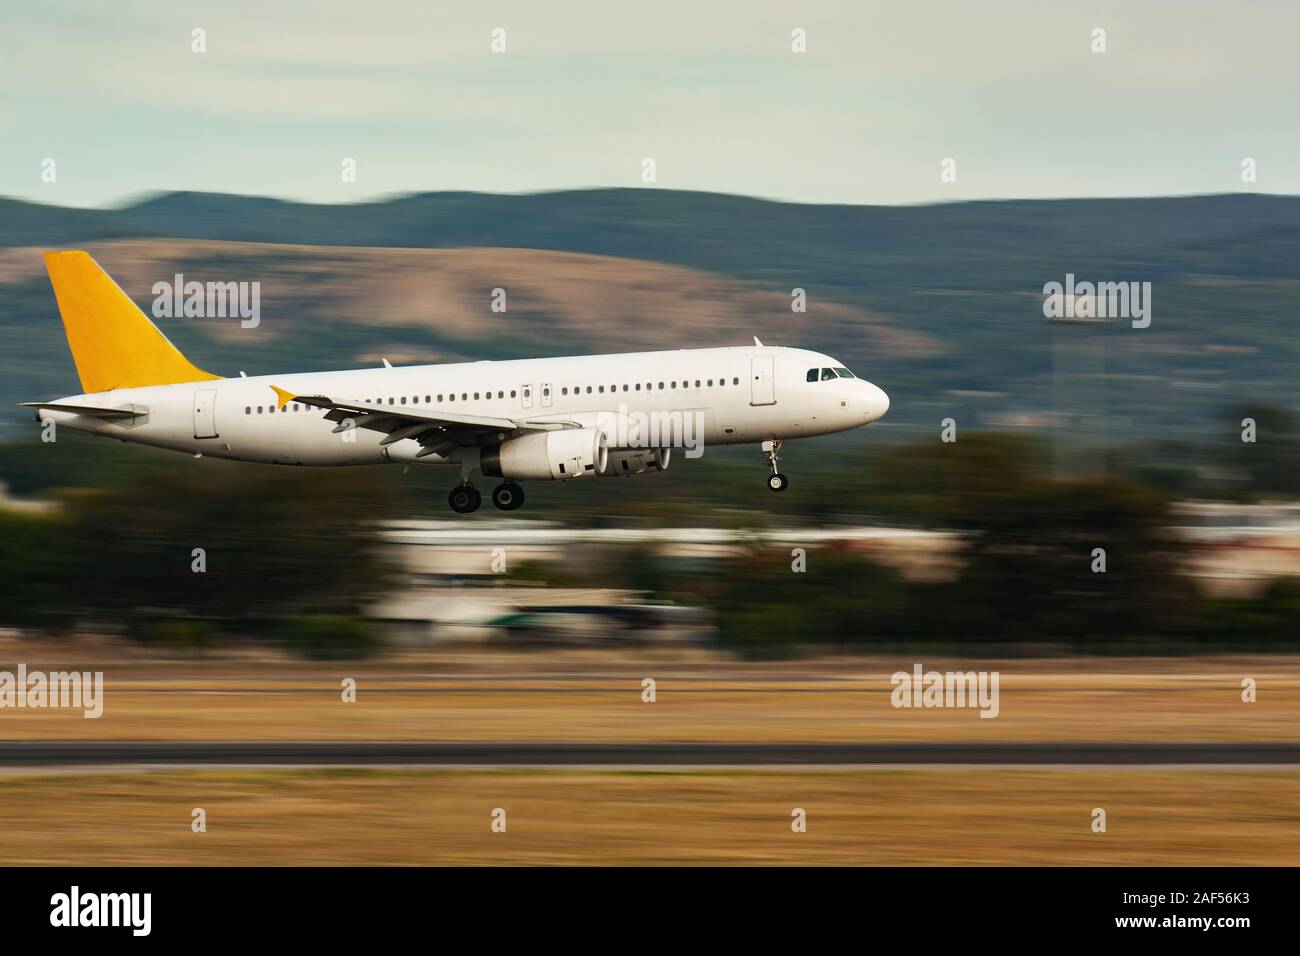 Panning shot of passenger airplane landing on runaway Stock Photo